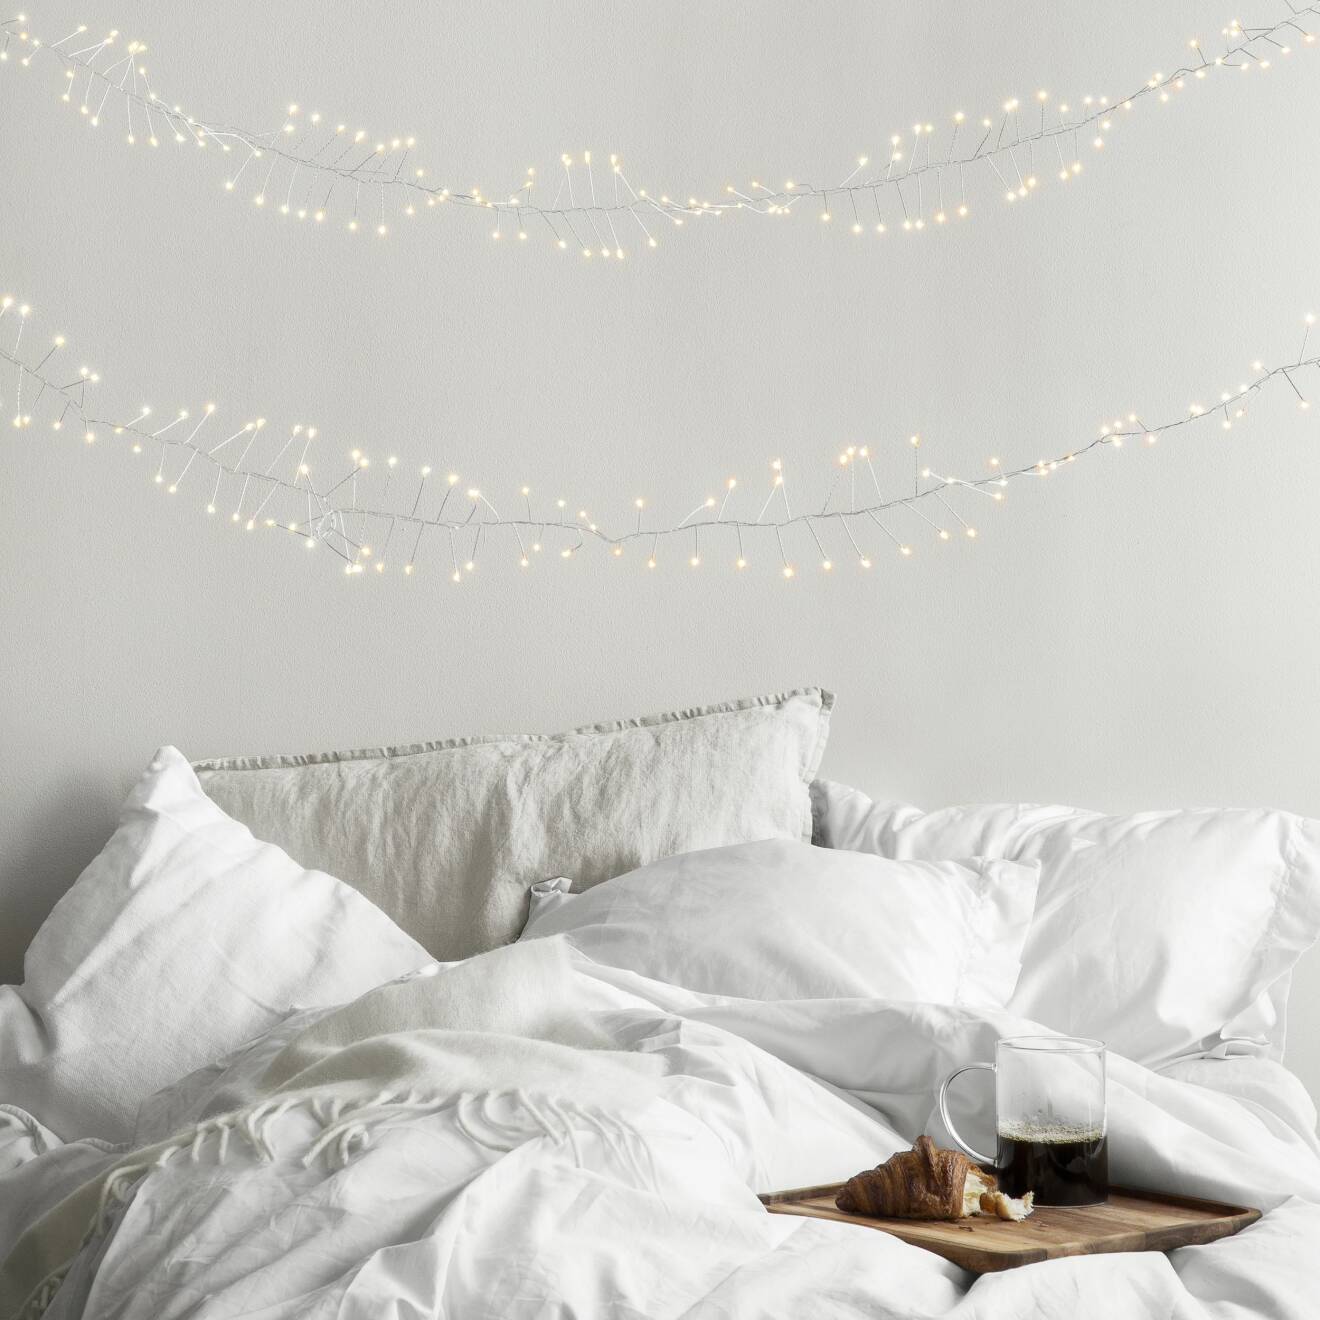 sovrum med ljusslingor och julstämning